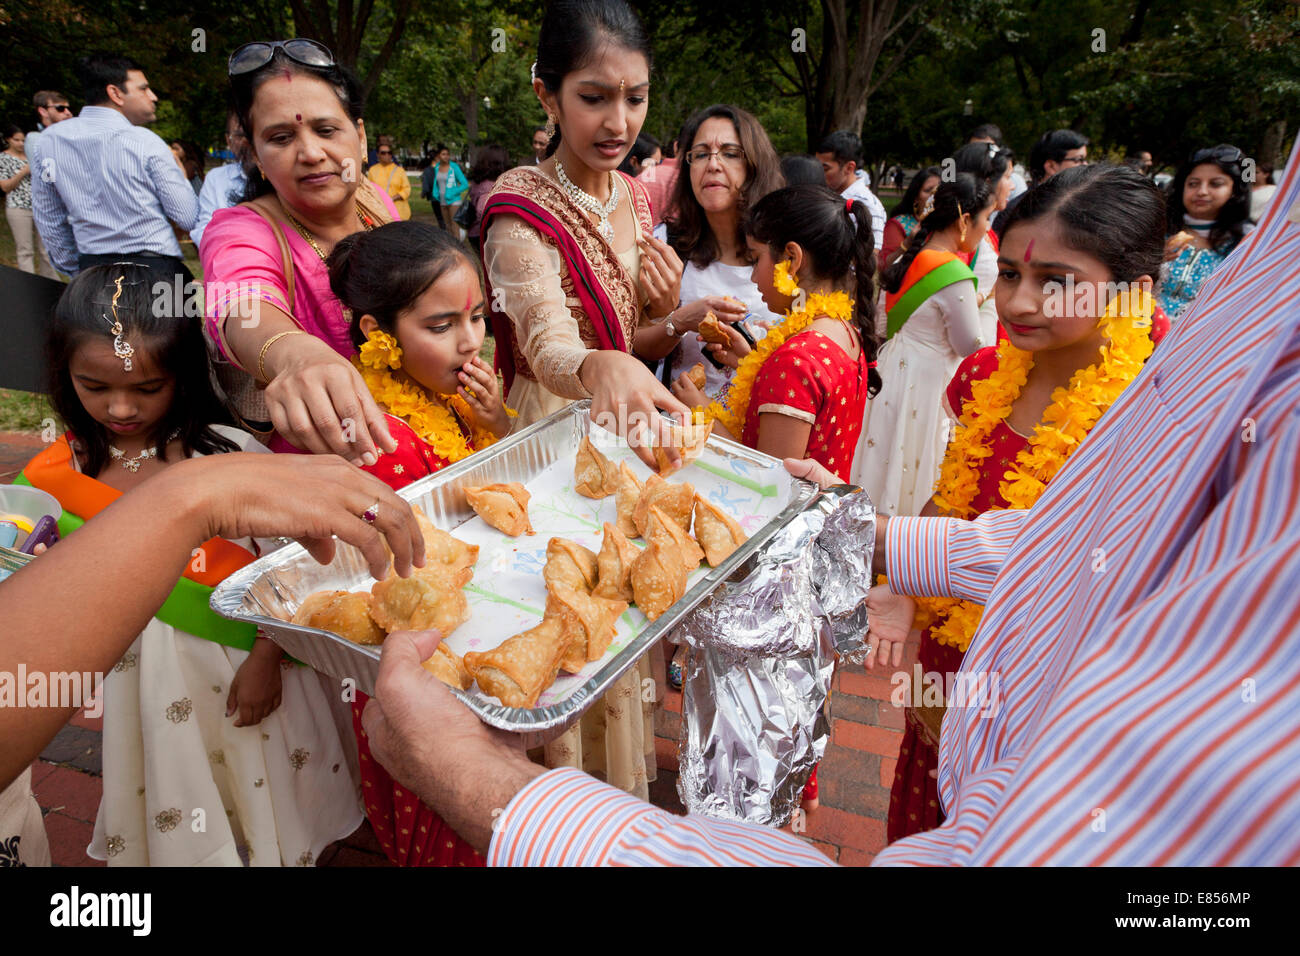 Foule rassemblée autour d'une assiette de samosas Indiens Banque D'Images